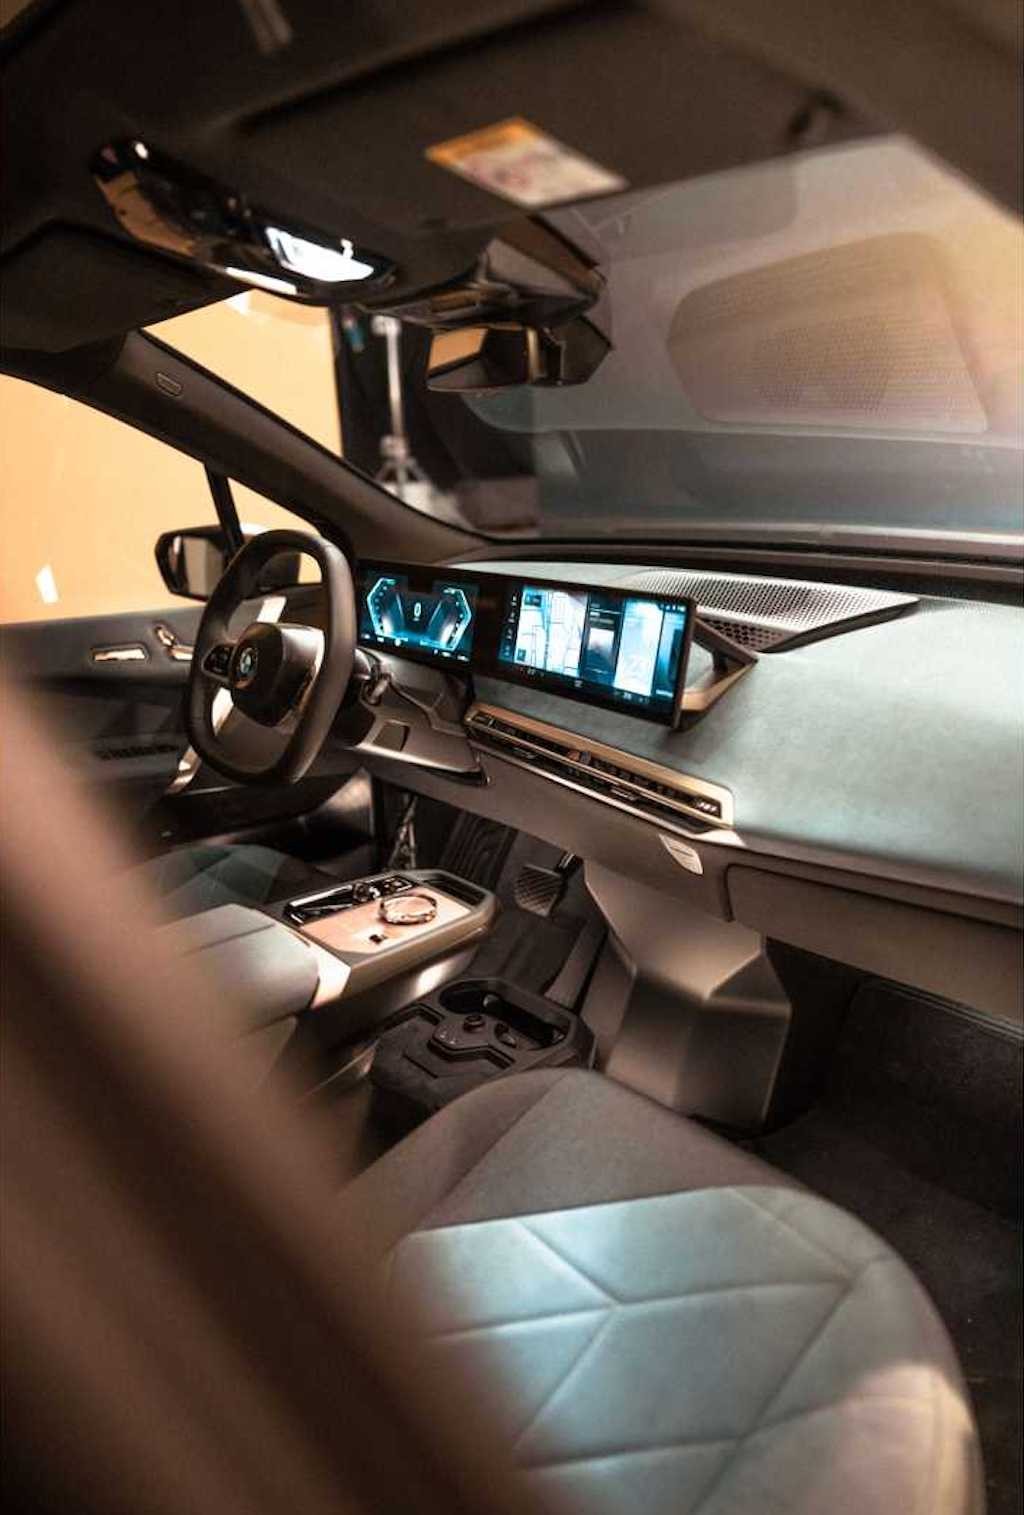 Mercedes khoe hệ thống giải trí nhiều màn hình cảm ứng, BMW vẫn trung thành với núm vặn nhưng... ảnh 10